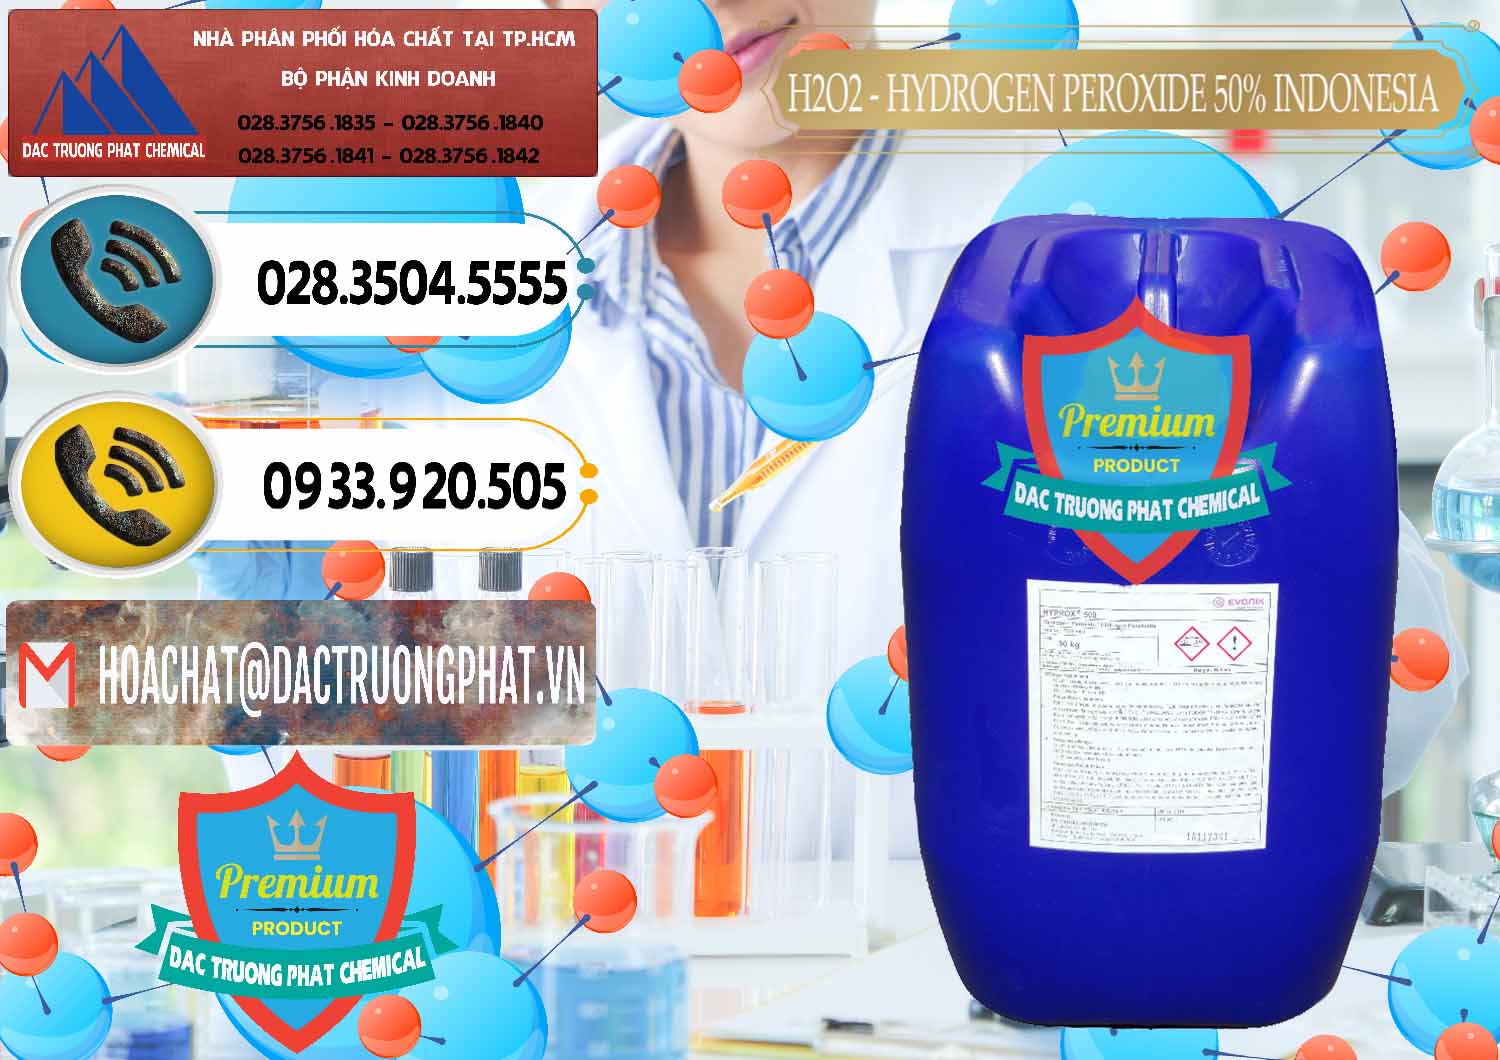 Công ty chuyên phân phối ( bán ) H2O2 - Hydrogen Peroxide 50% Evonik Indonesia - 0070 - Công ty chuyên bán và cung cấp hóa chất tại TP.HCM - hoachatdetnhuom.vn